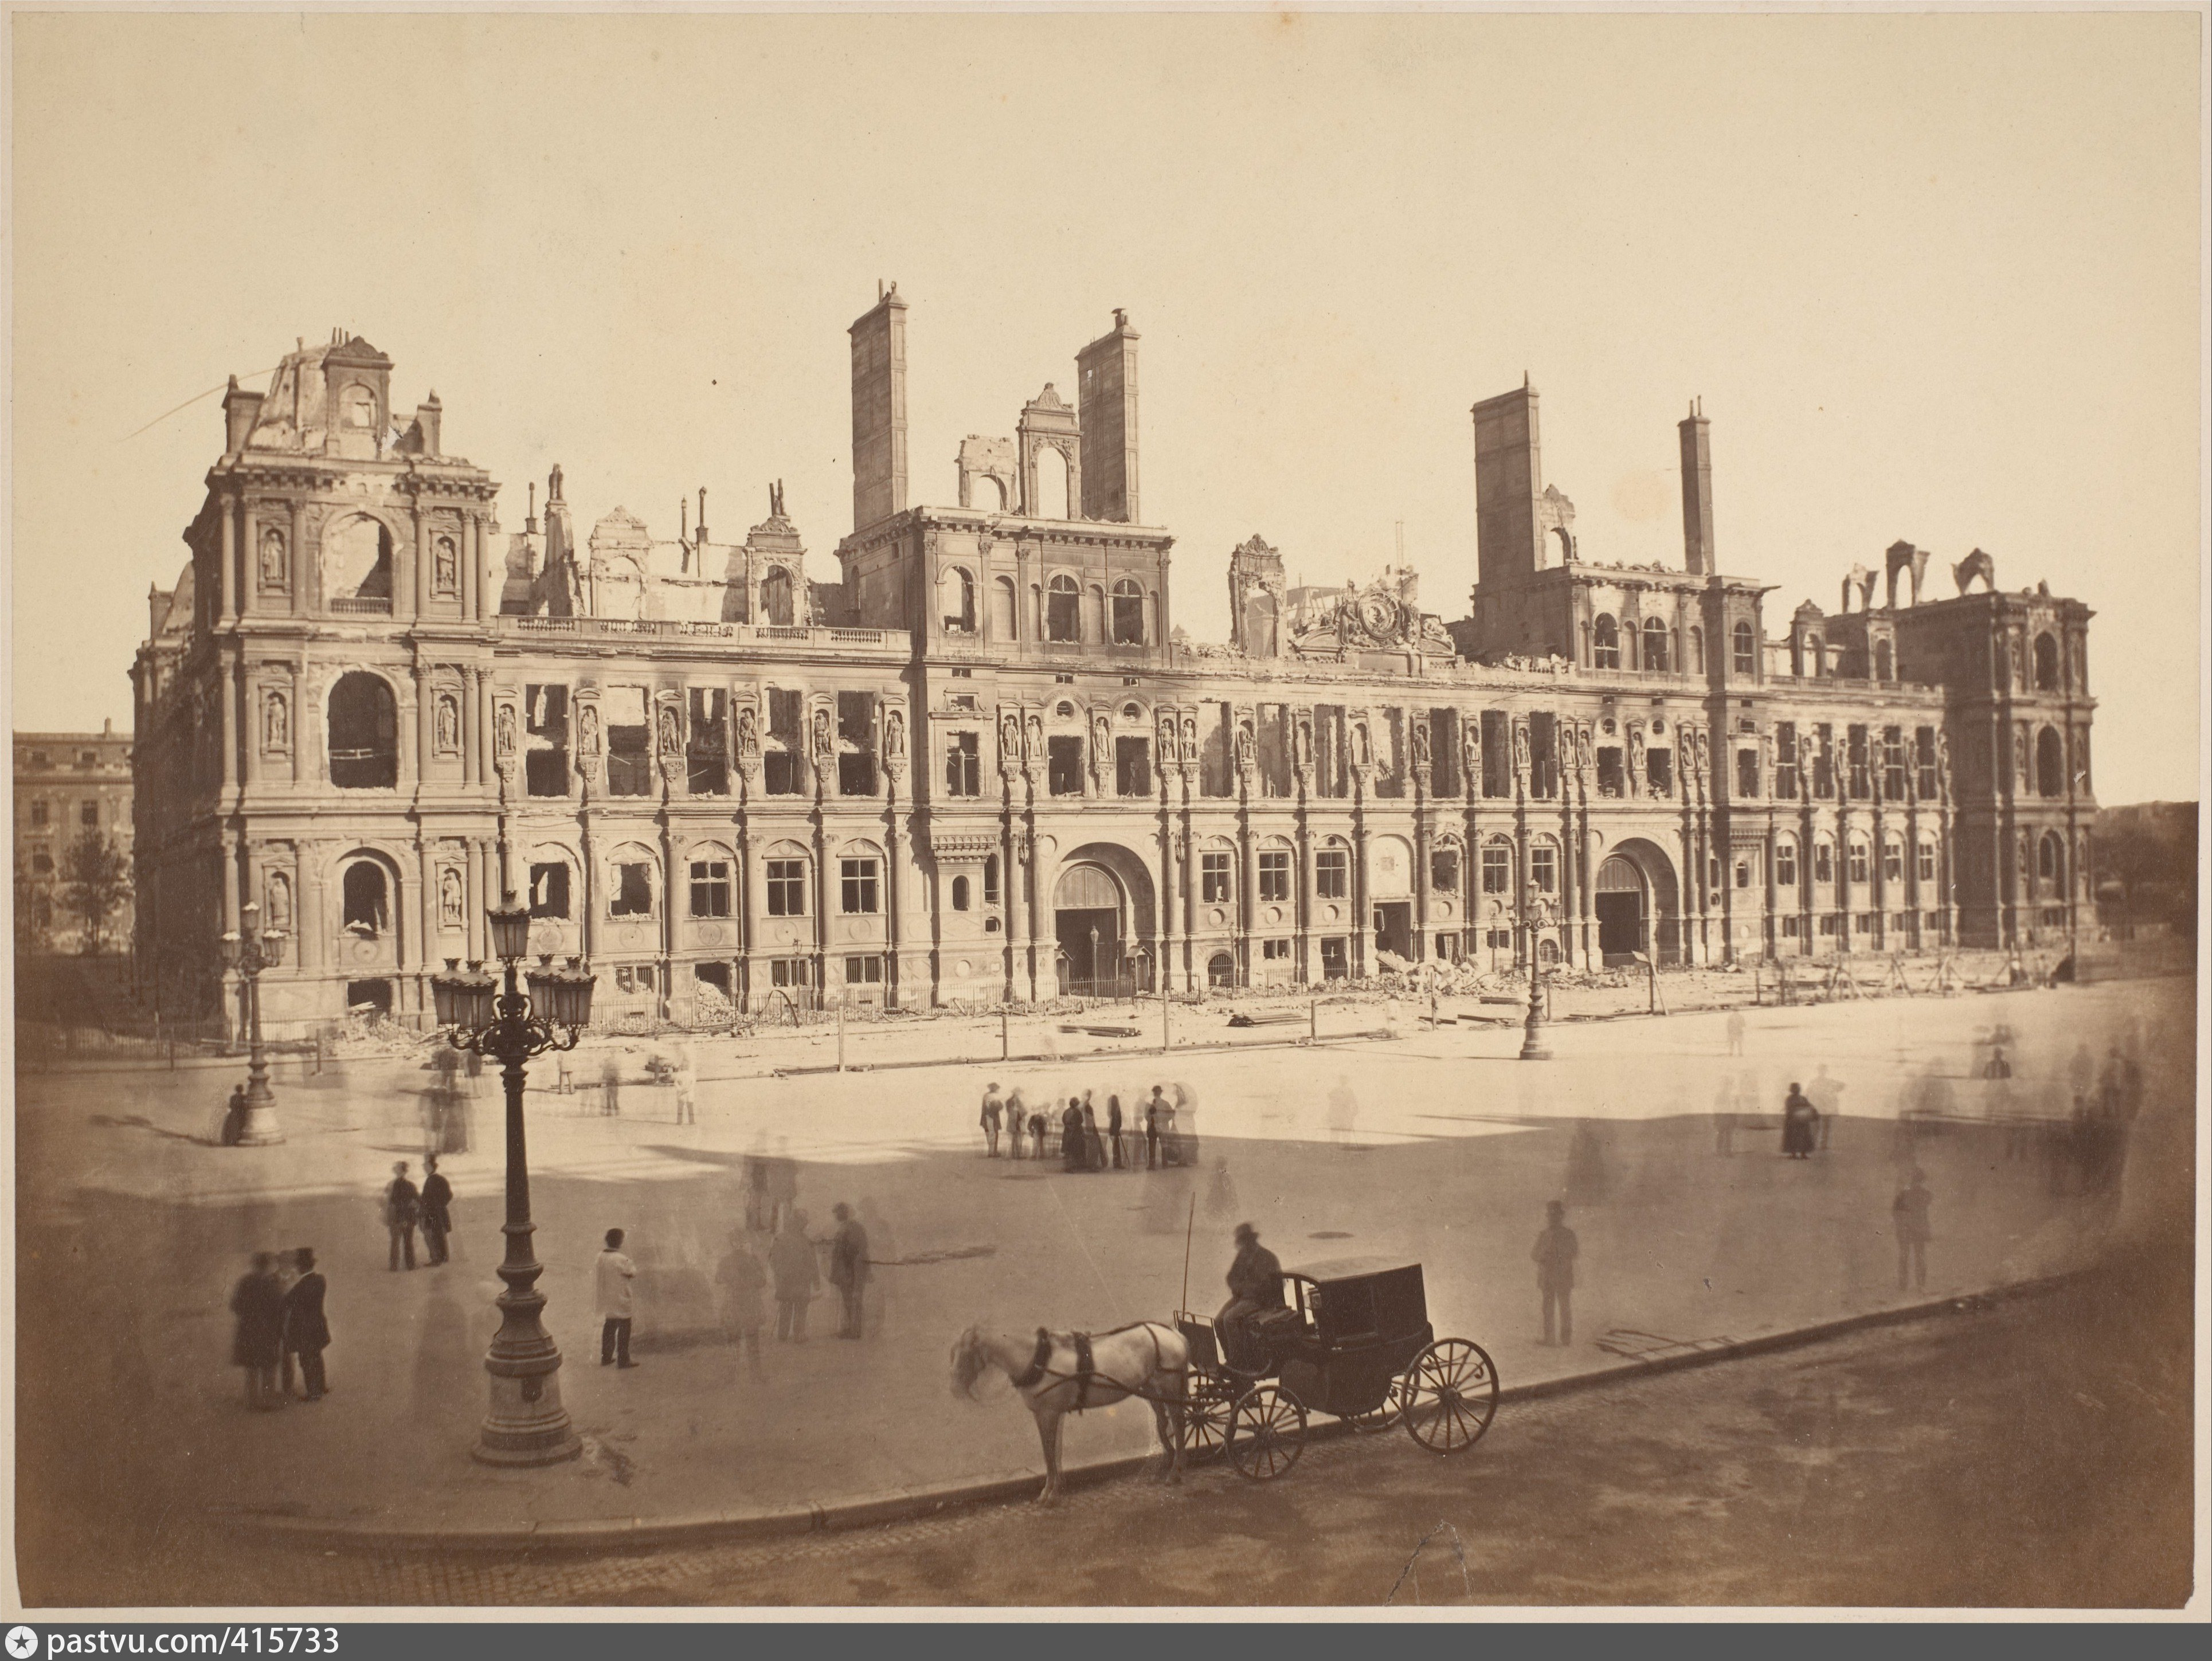 Франция 18 19 веков. Отель-де-Виль Париж 1871. Дворец Тюильри в Париже 18 век. Отель де Виль Париж Франция до 1871 года. Лувр 19 век.